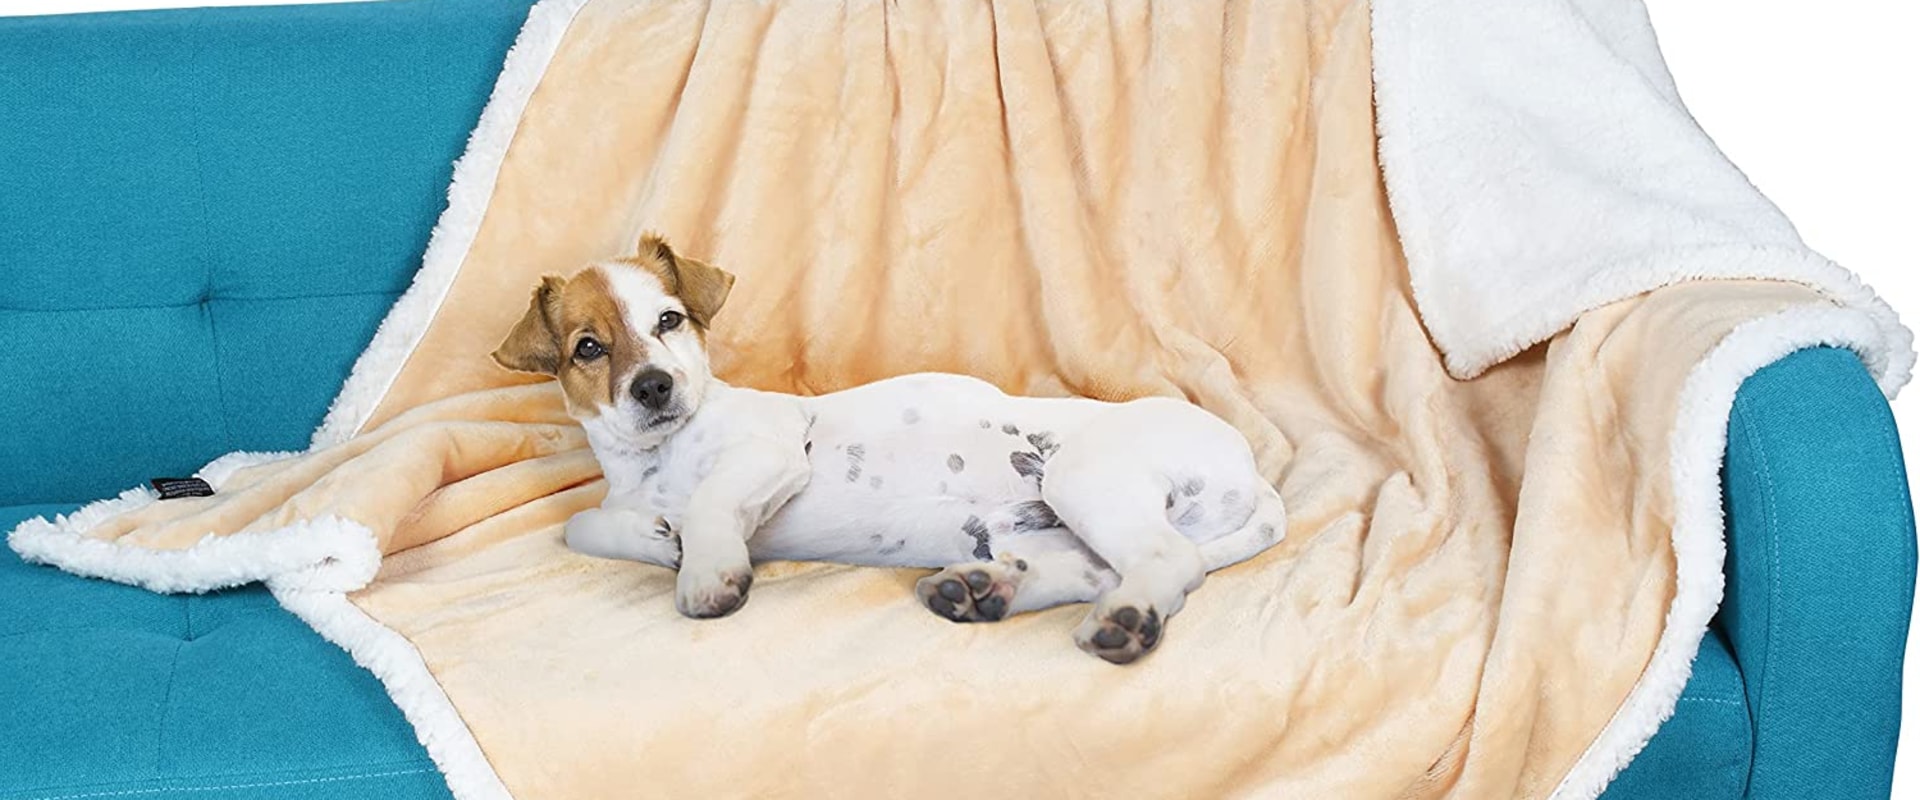 Wat voor soort dekens zijn goed voor honden?